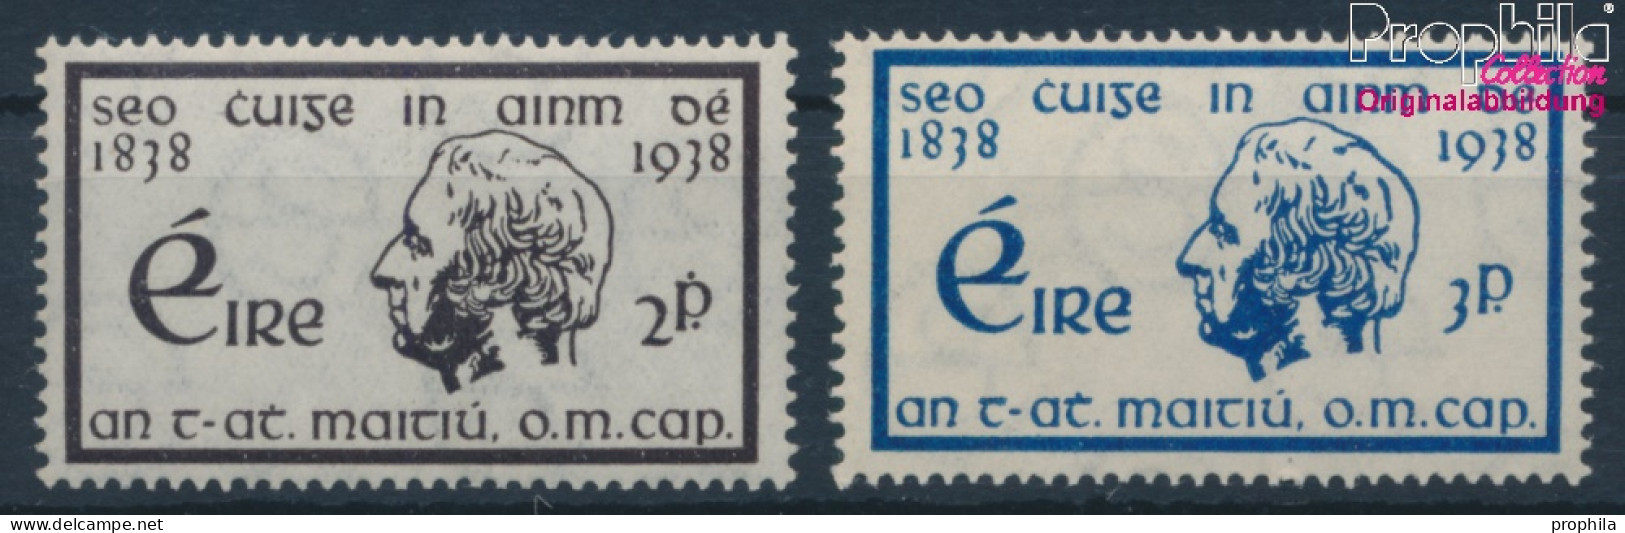 Irland Postfrisch Enthasltsamkeit 1938 Enthaltsamkeit  (10398324 - Nuevos